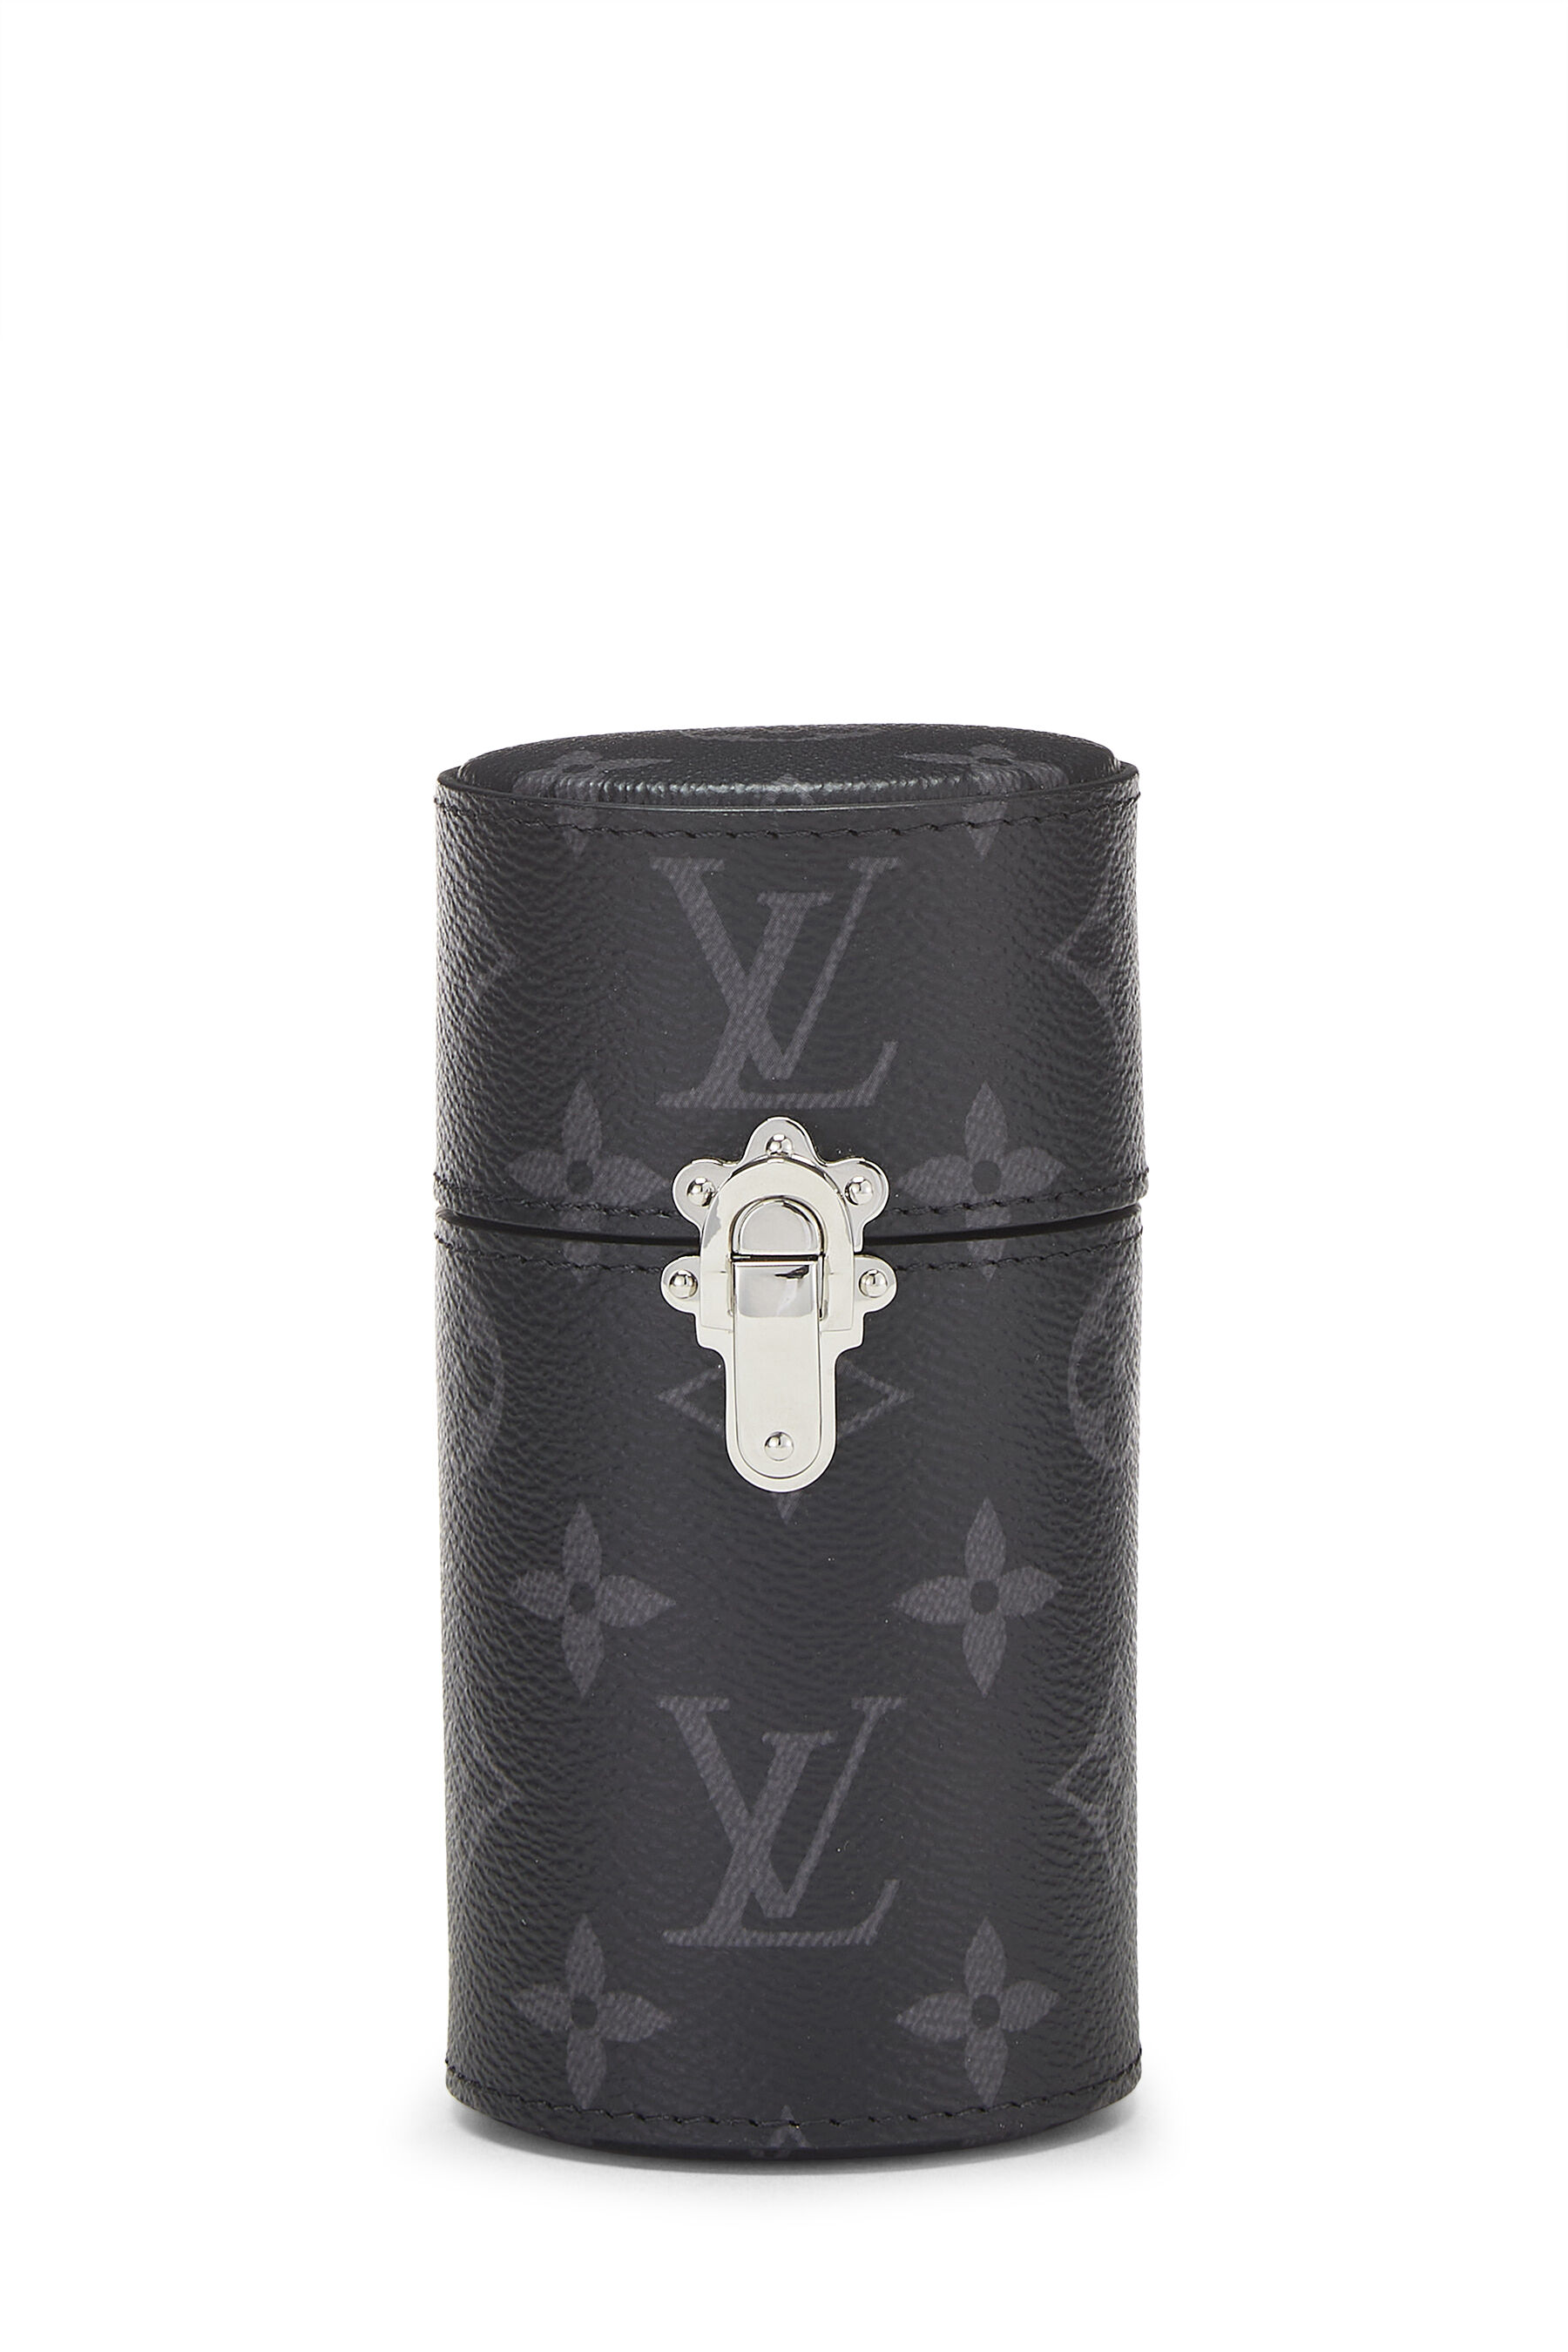 Louis Vuitton - Black Monogram Eclipse Fragrance Case